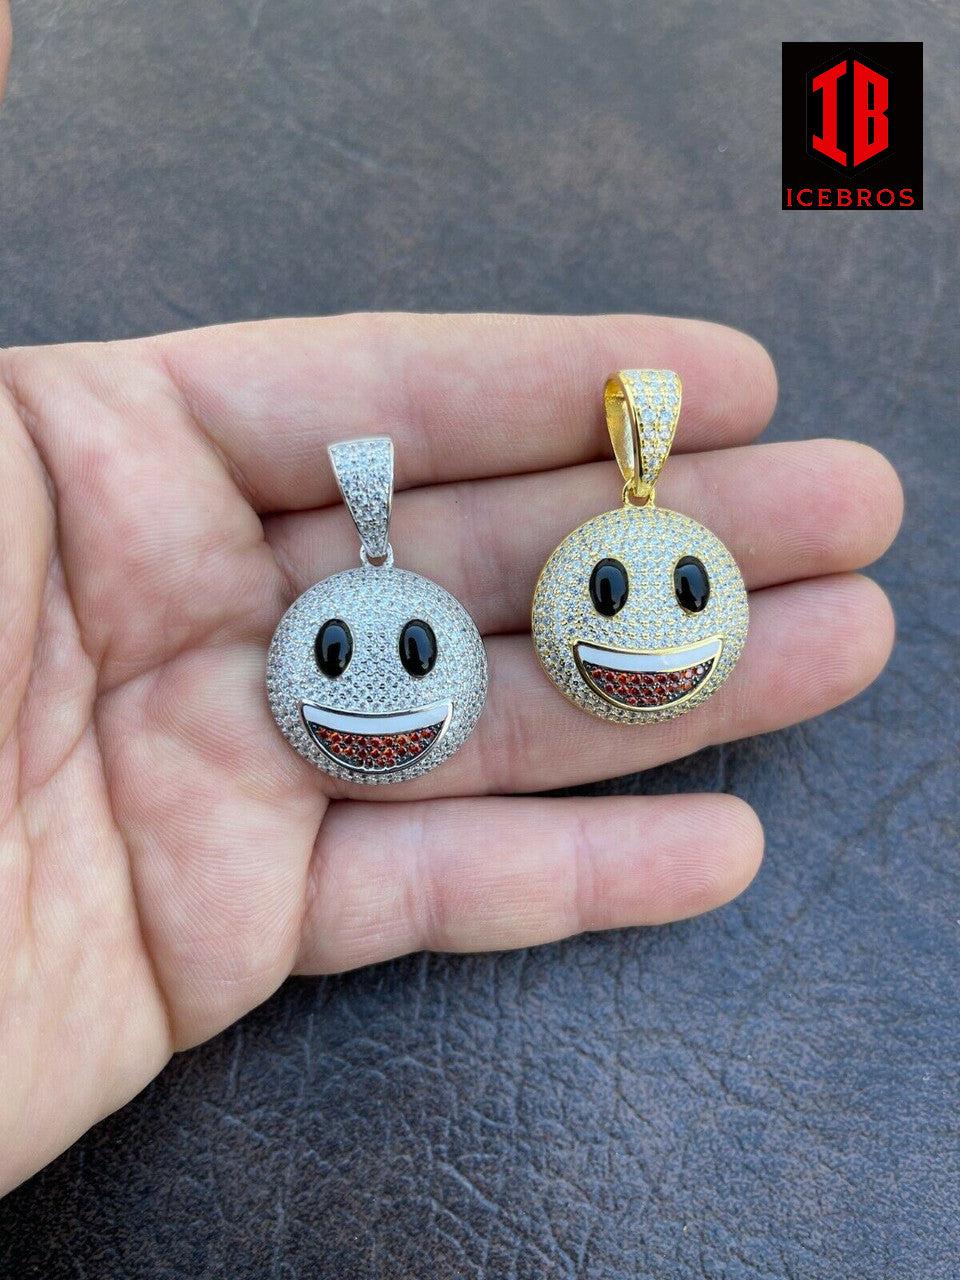 925 Sterling Silver Hip Hop Smiley Enamel Face Emoji Pendant Necklace Iced Gold